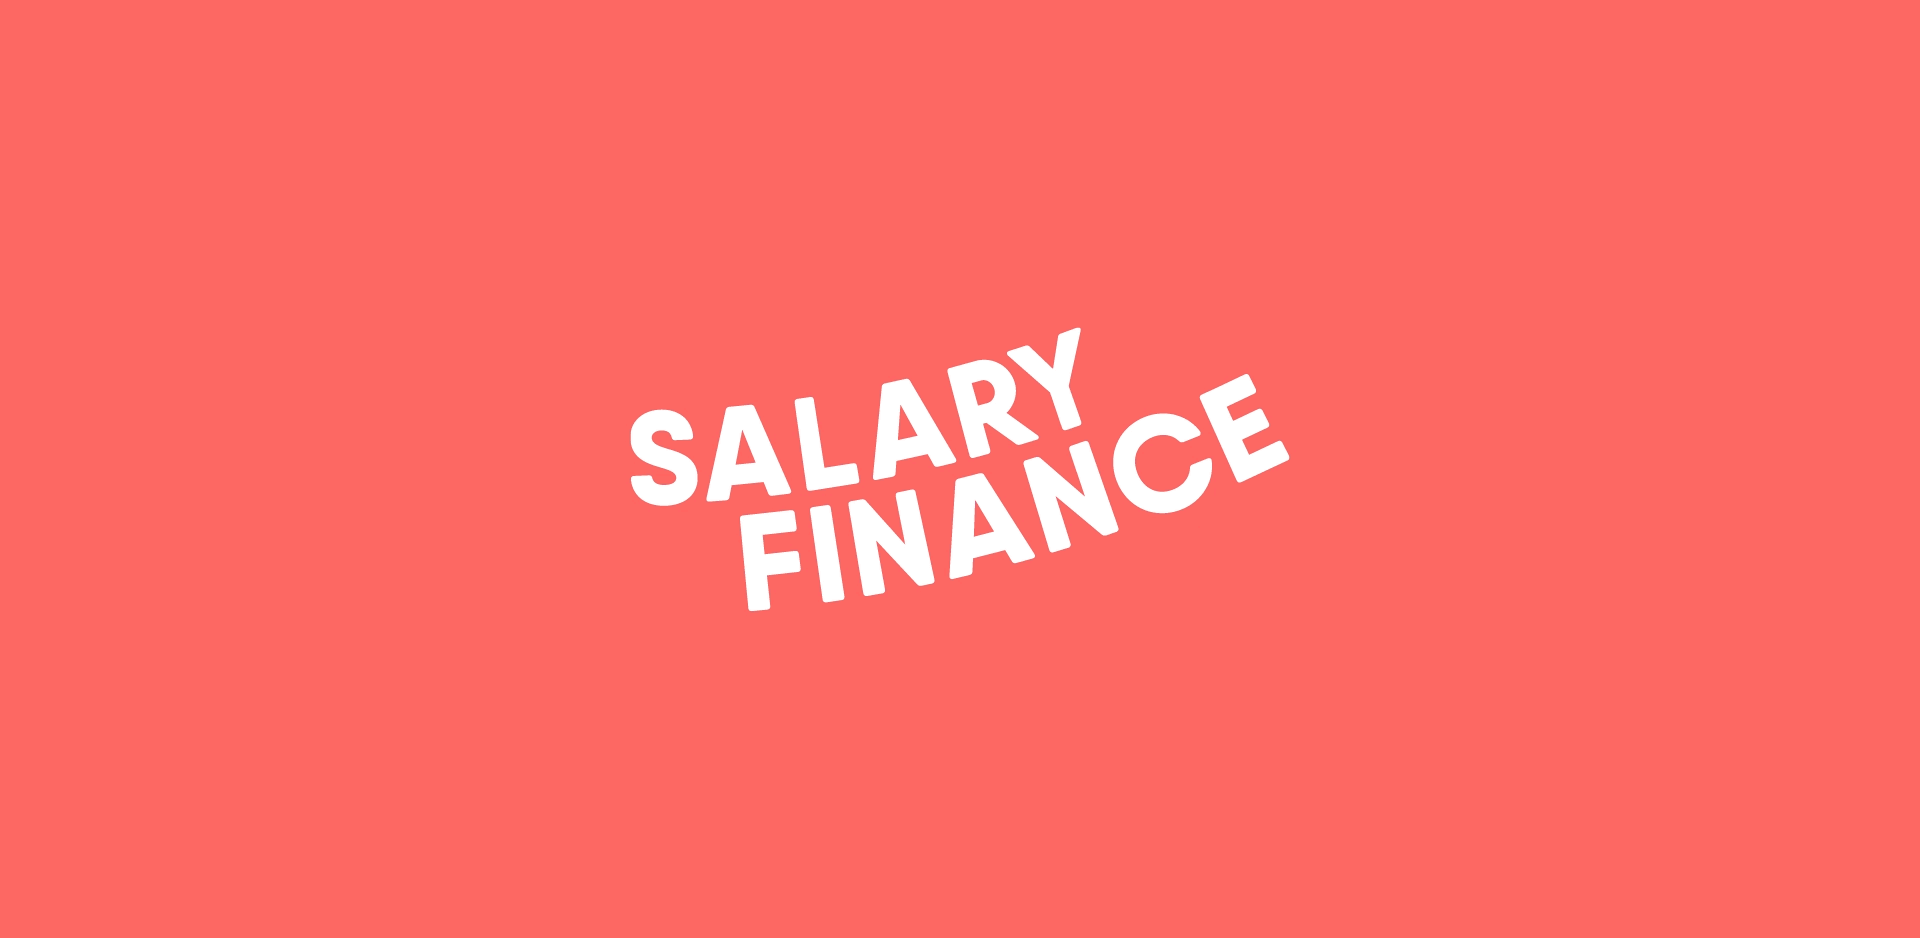 Red Finance Logo - Salary Finance - Branding a fintech start-up - Ragged Edge